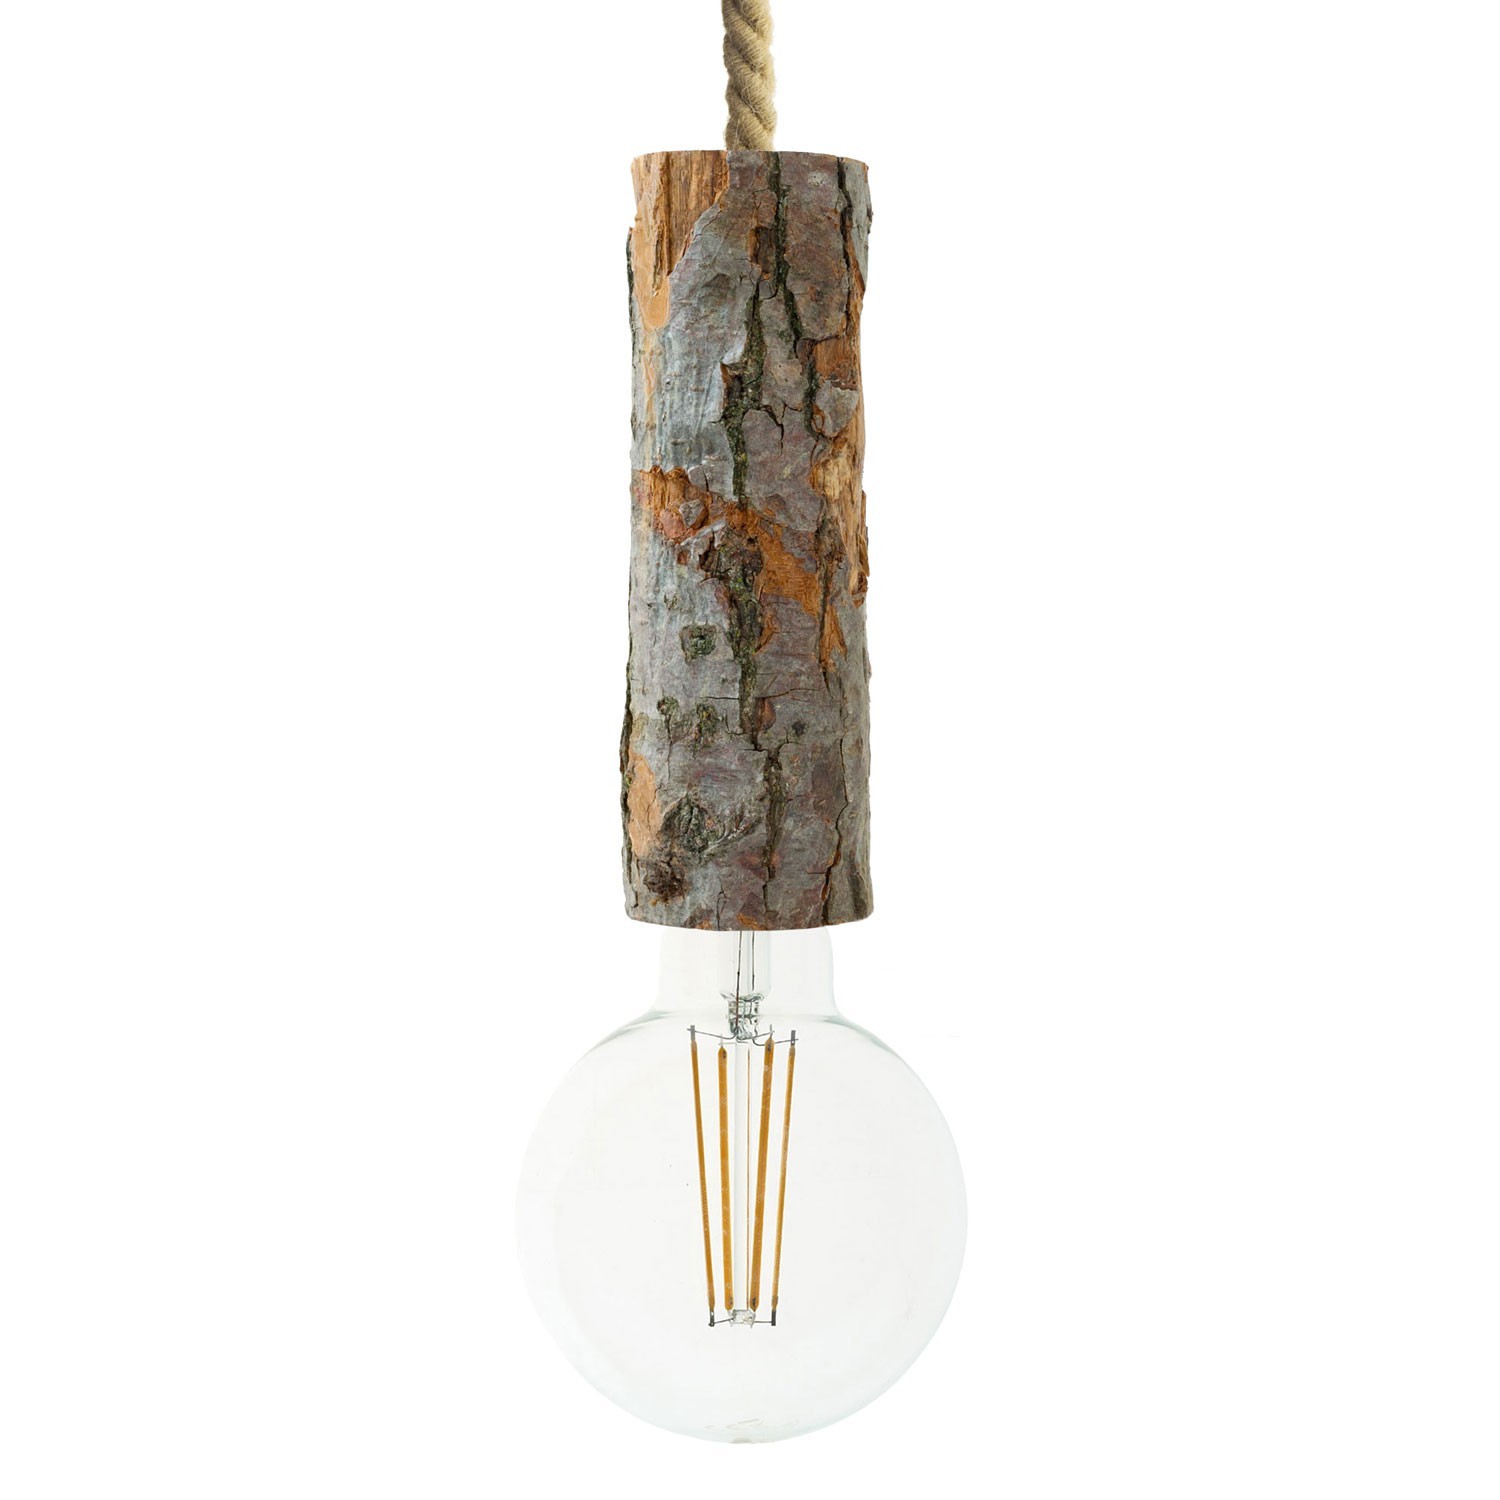 Viseća lampa s mornarskim užem XL kabelom i velikim grlom od grane s korom - Proizvedeno u Italiji